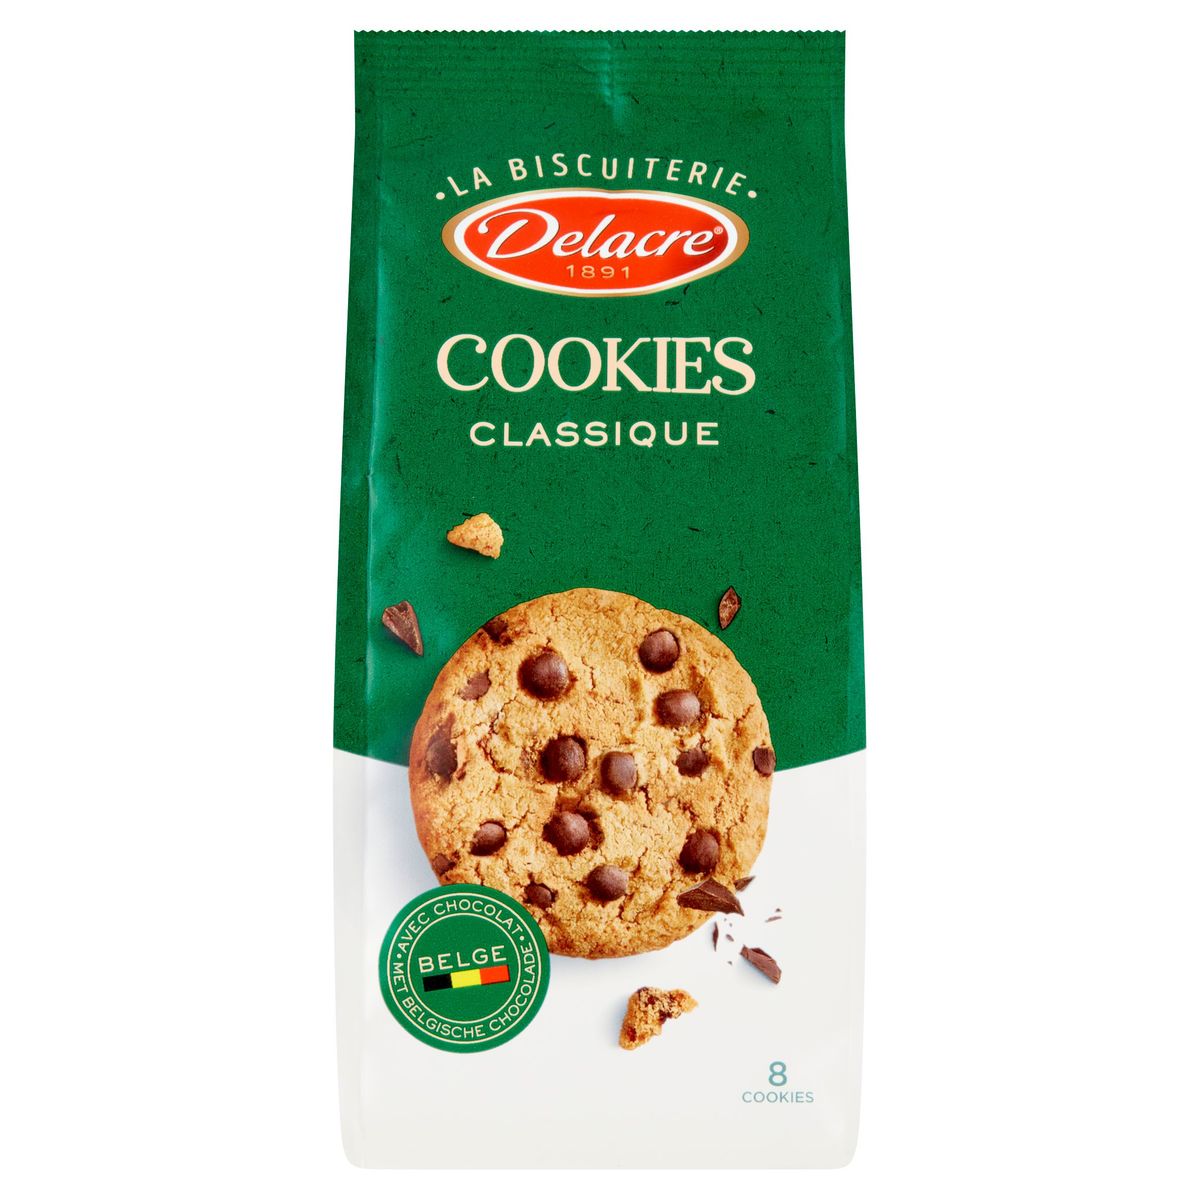 Delacre Cookies Classique 8 Biscutis 136 g